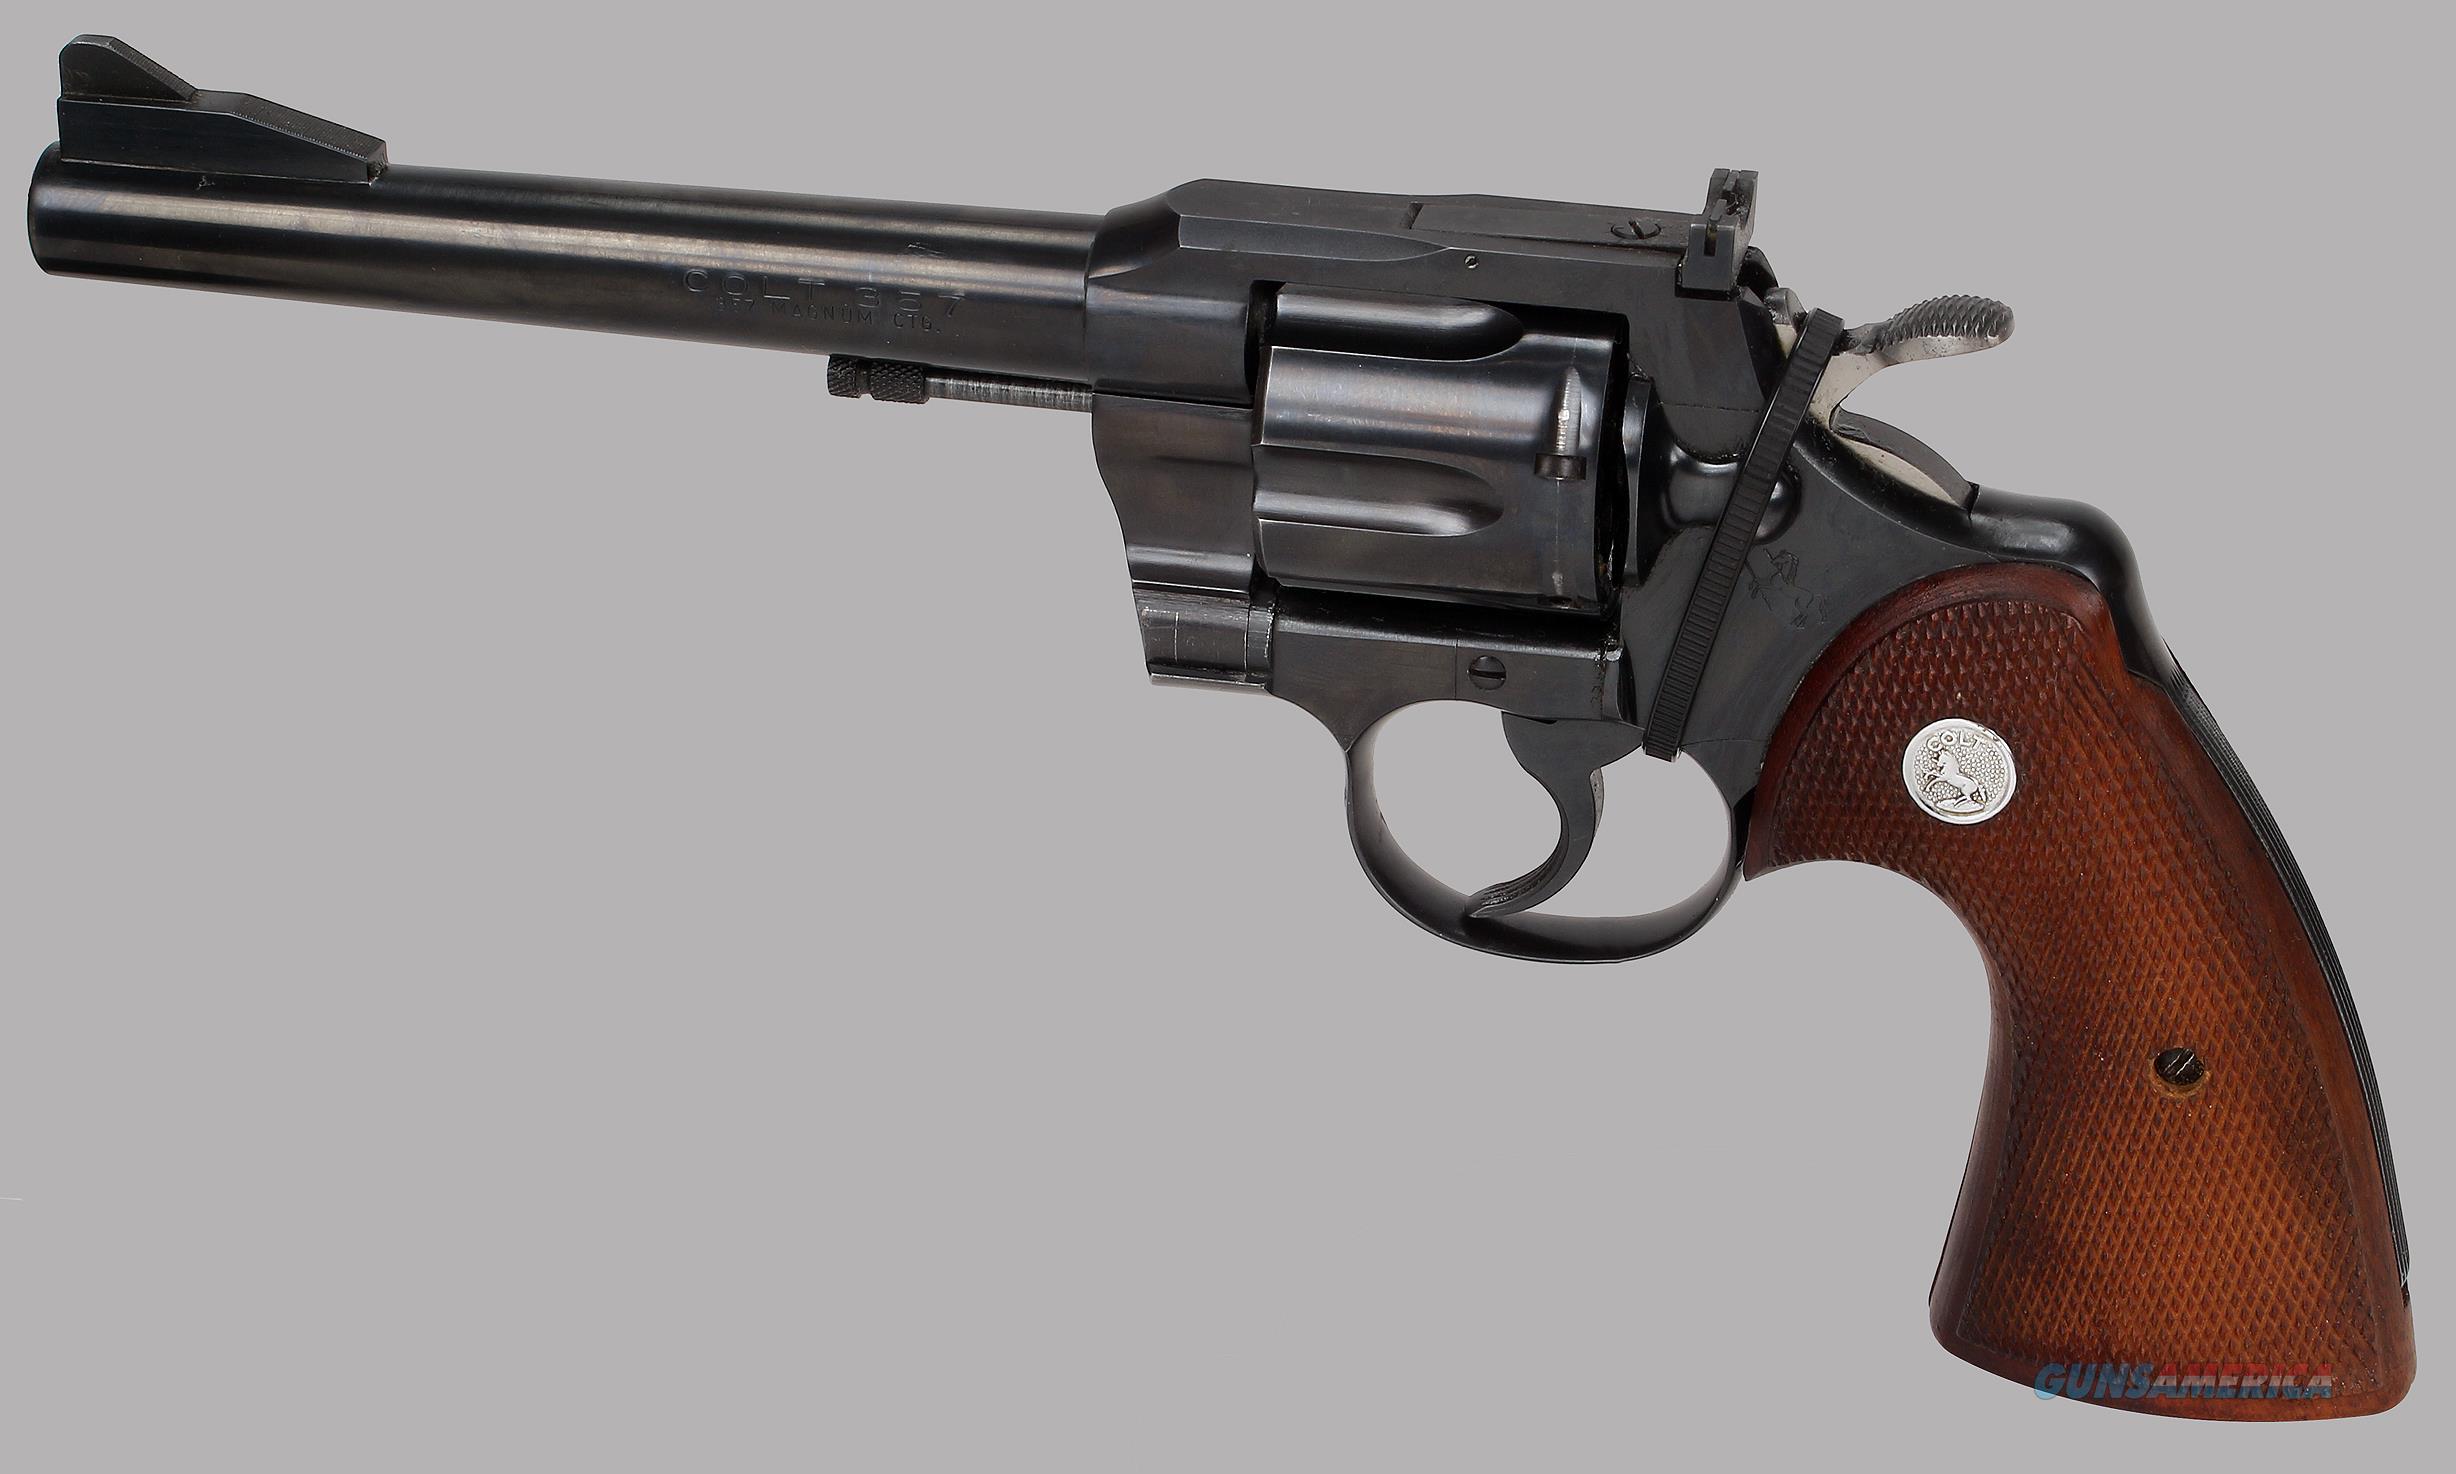 Colt 357 Magnum Revolver Model 357 For Sale At 997670035 3036